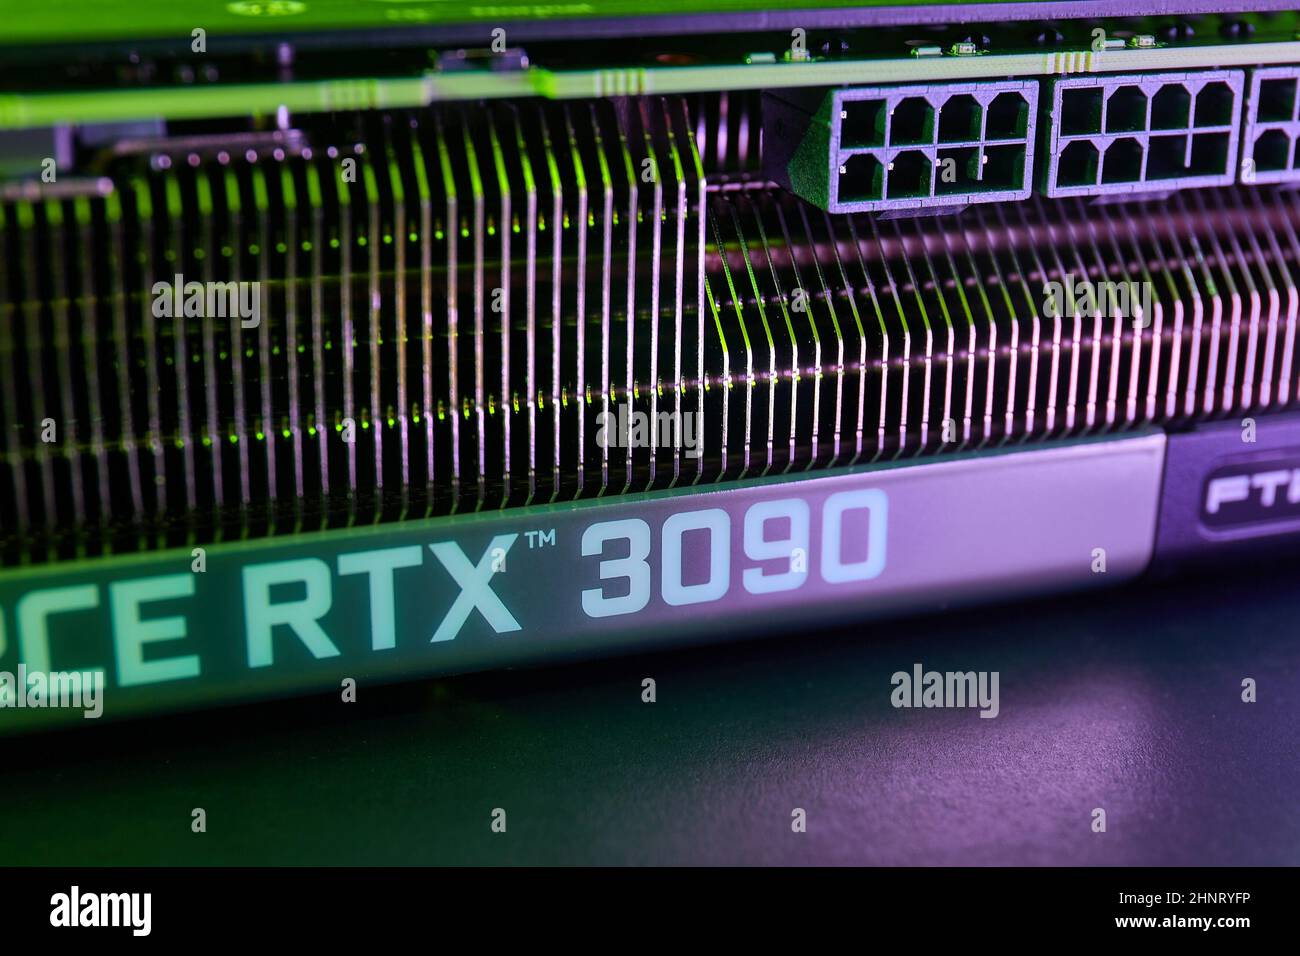 EVGA Geforce RTX 3090 Nvidia GPU display Stock Photo